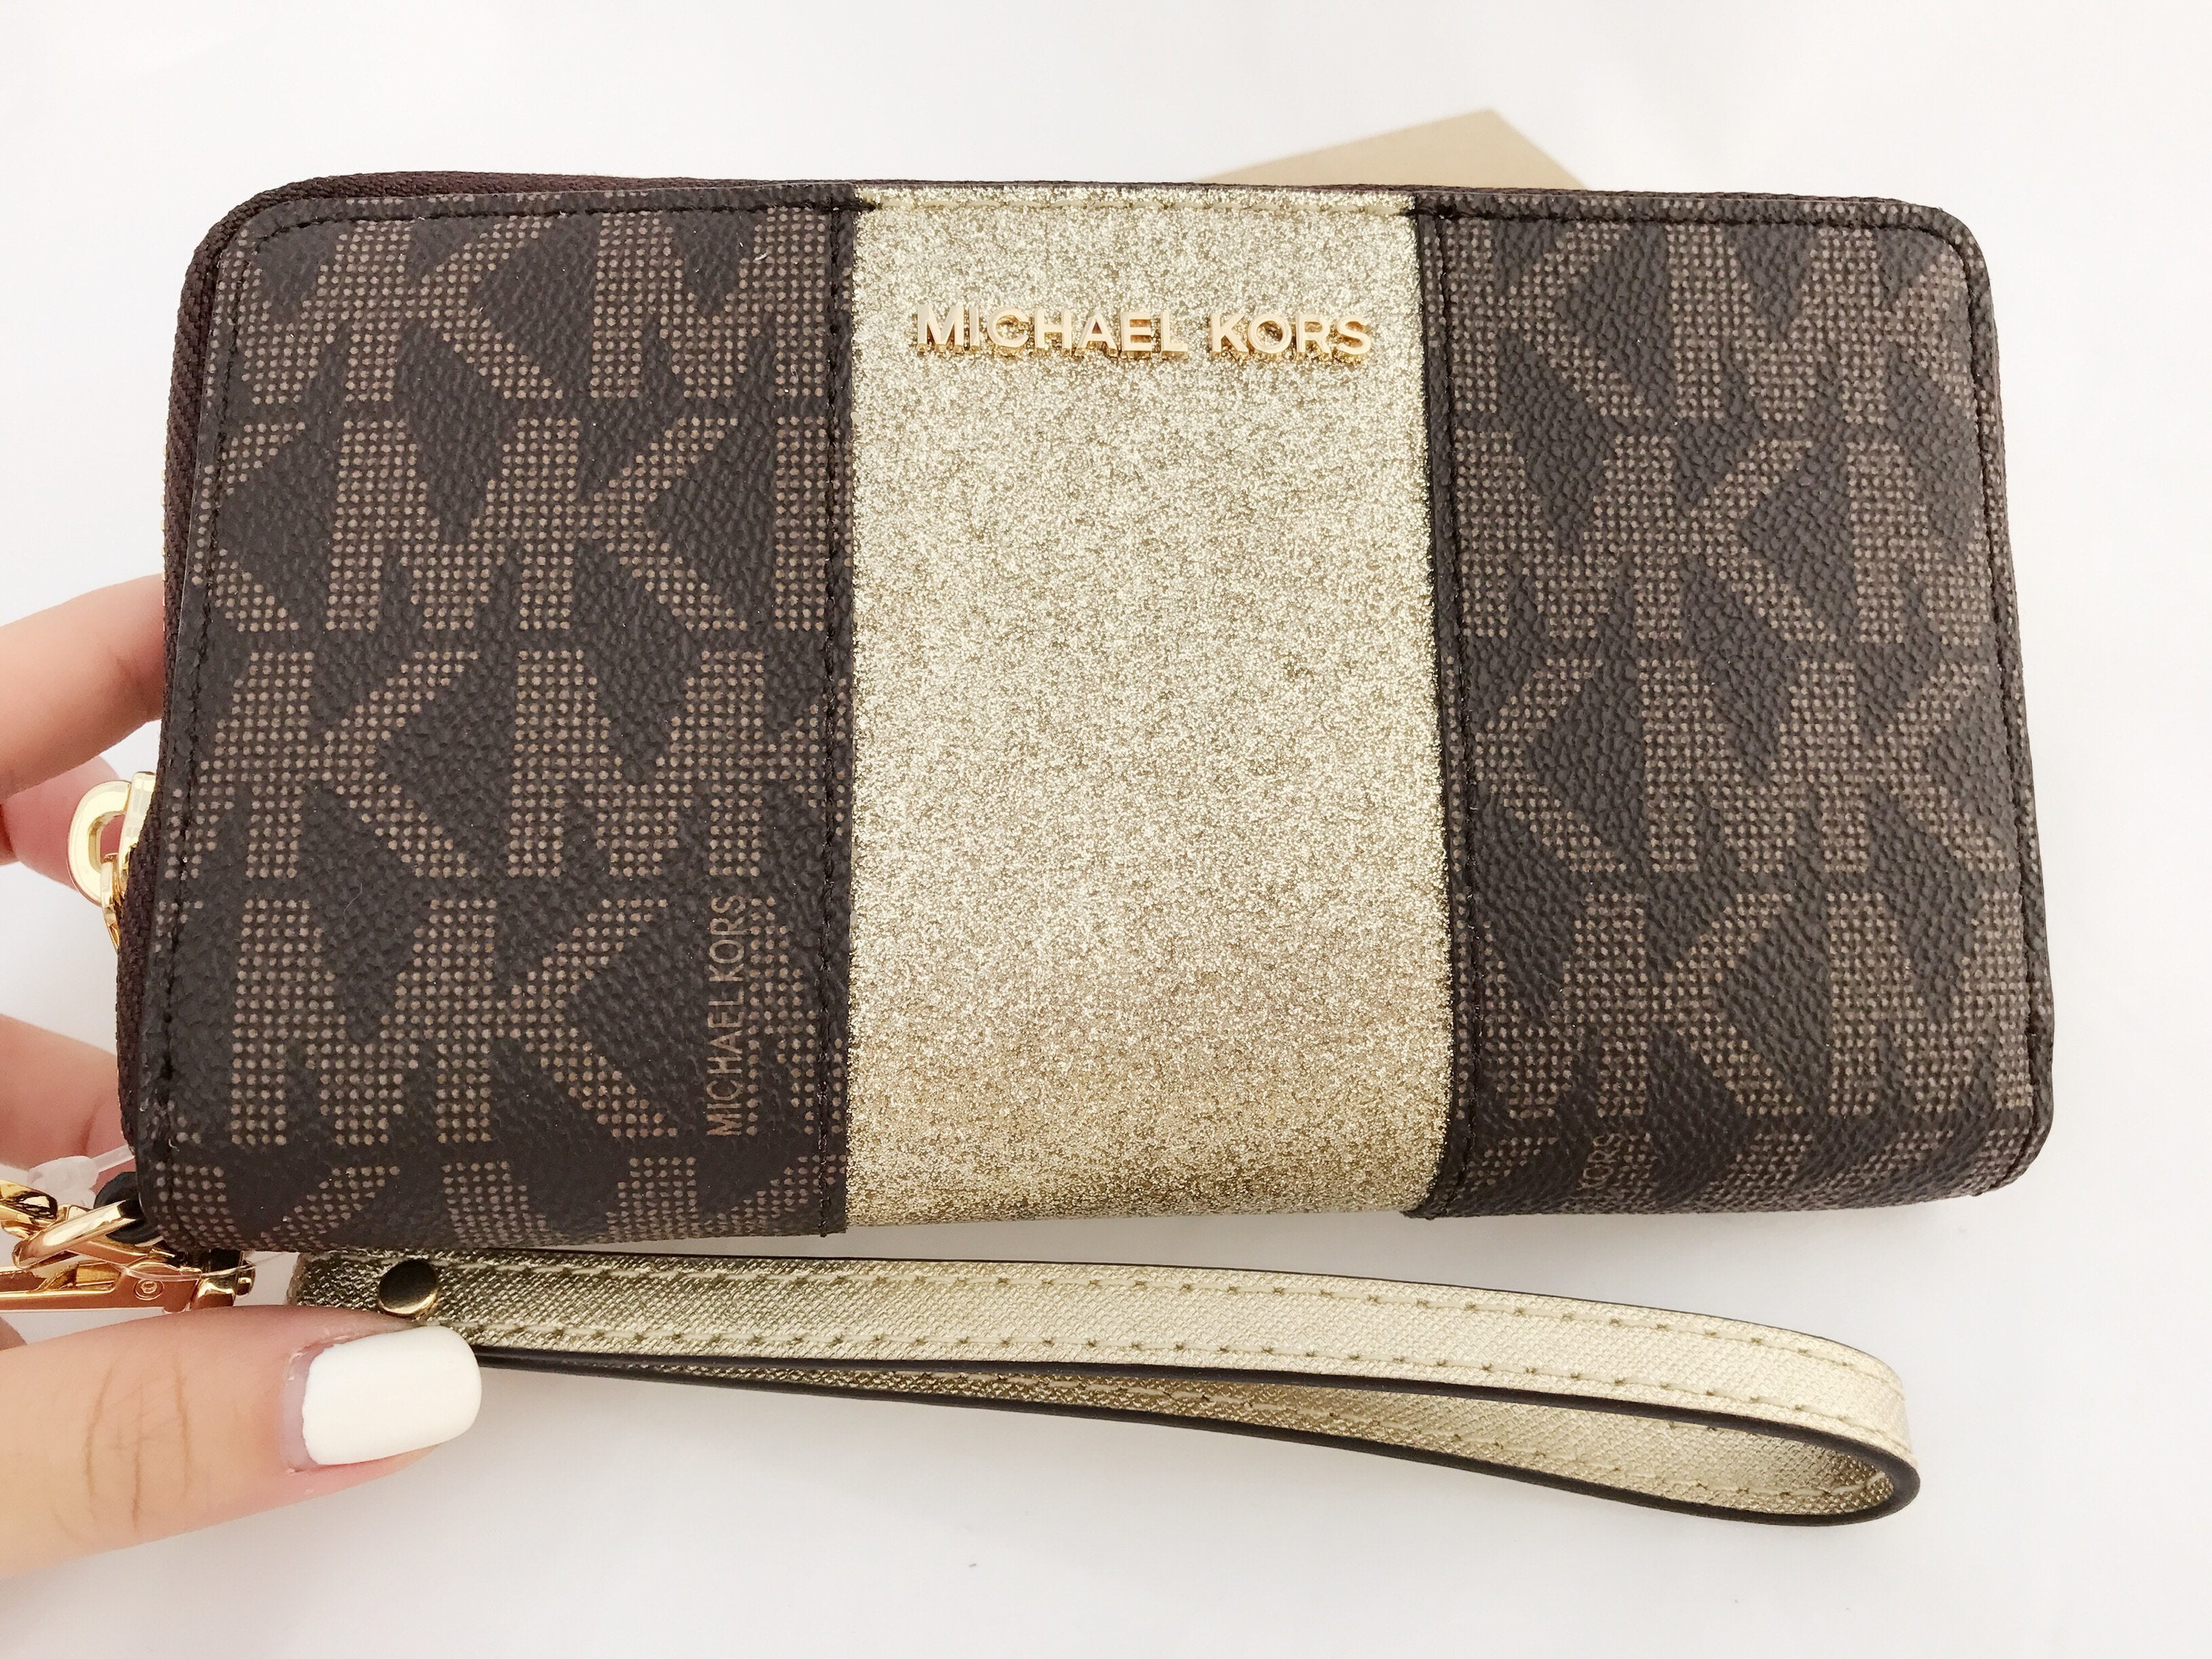 mk brown wallet